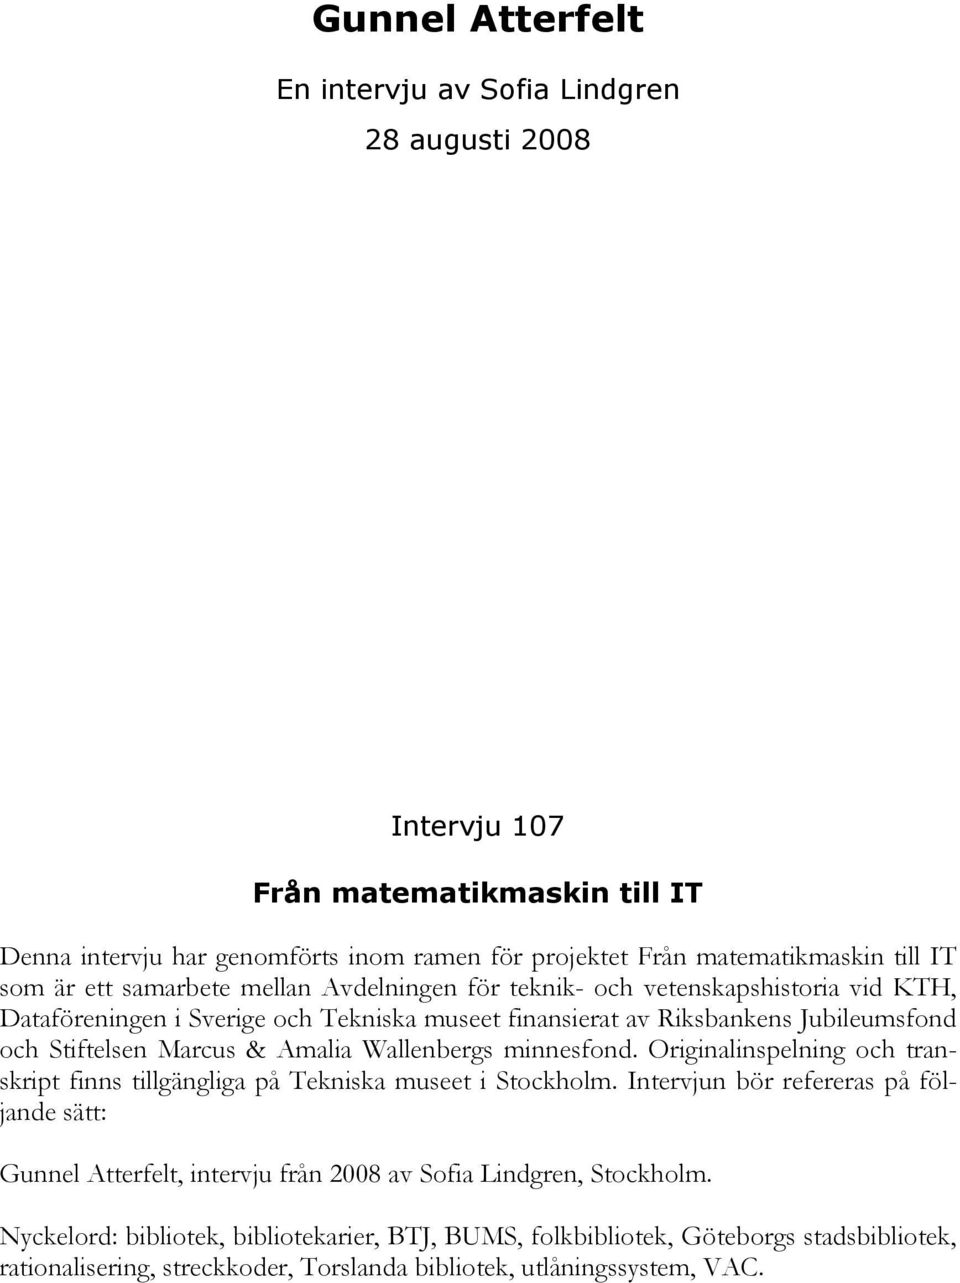 Amalia Wallenbergs minnesfond. Originalinspelning och transkript finns tillgängliga på Tekniska museet i Stockholm.